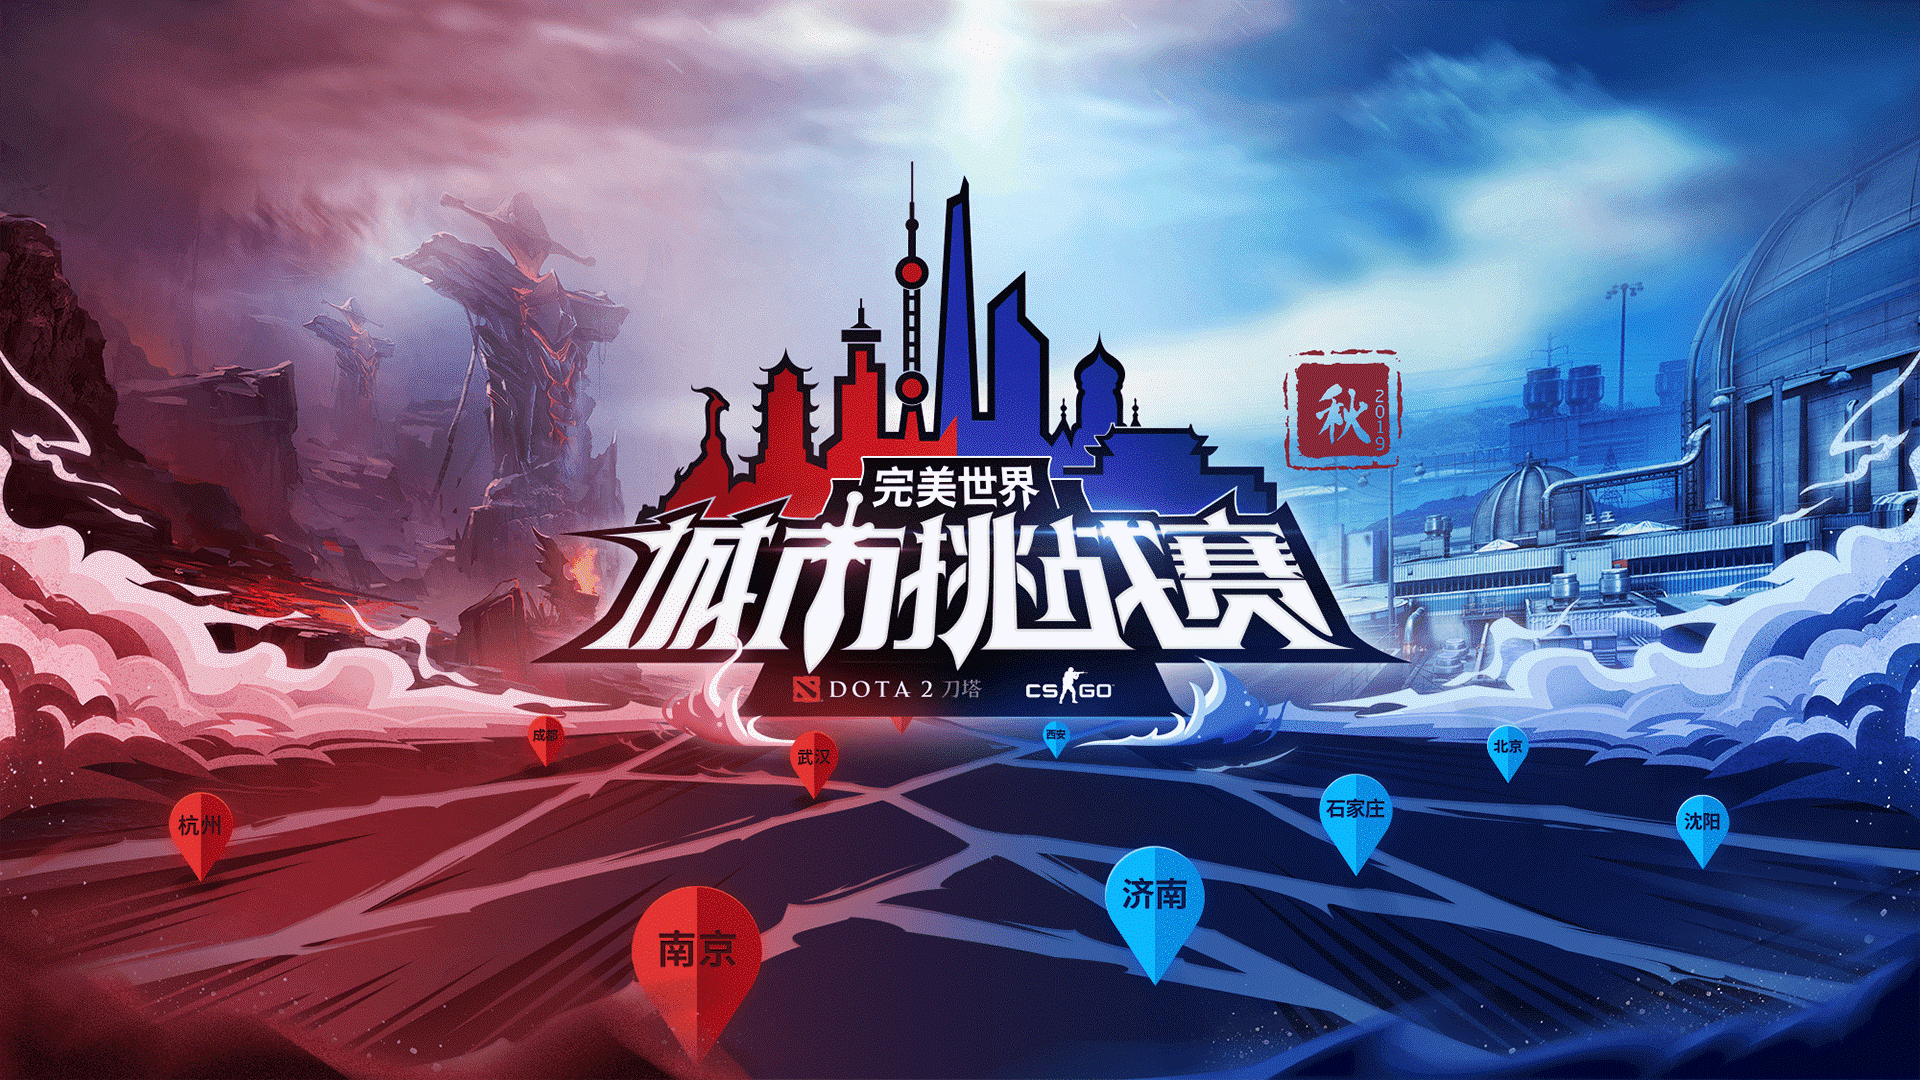 城市挑战赛（秋季）CS:GO本周六首周北京、郑州、长春开战